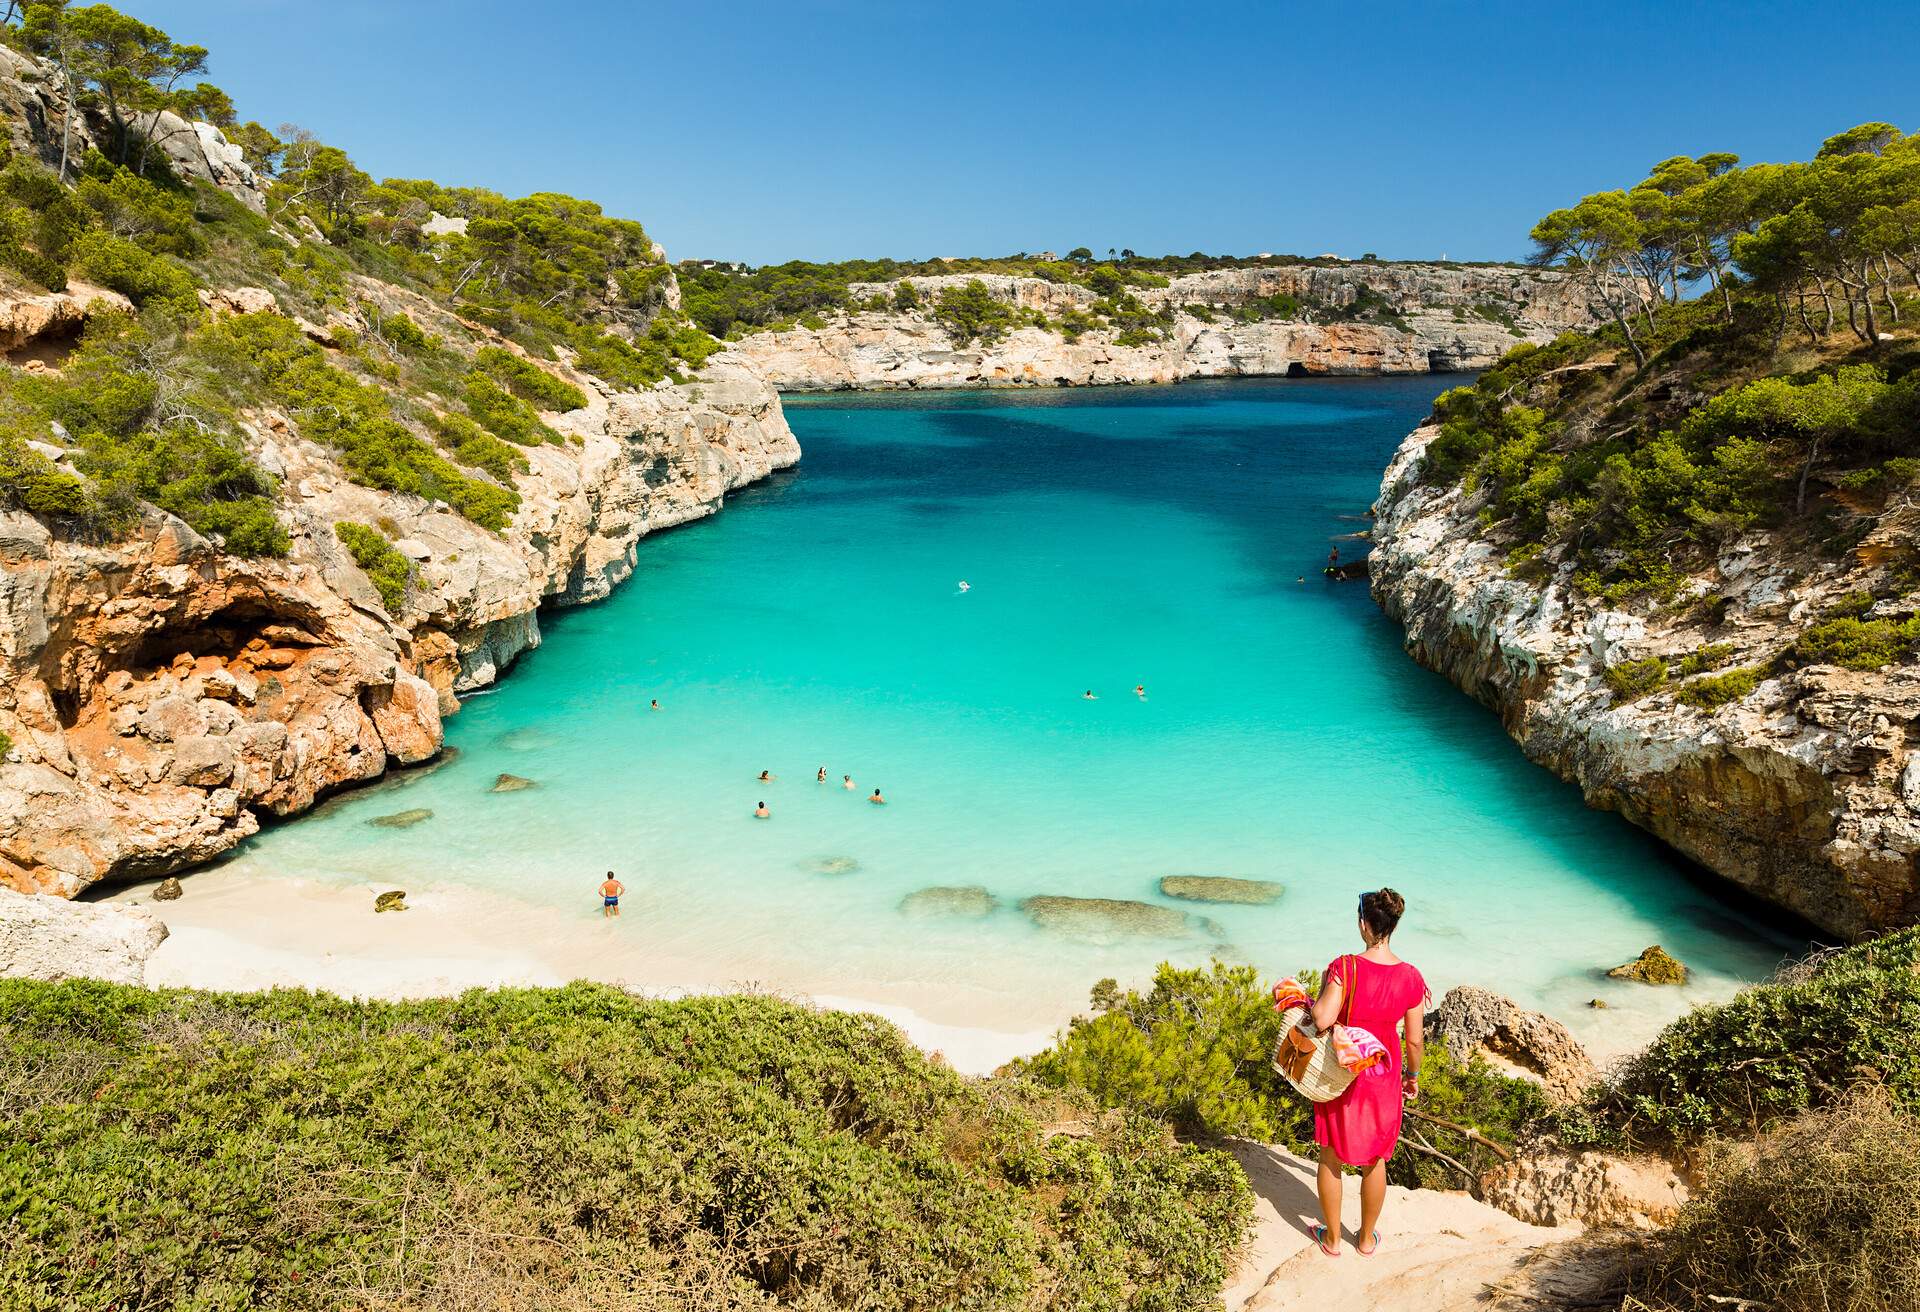 Calo des Moro, Mallorca. Spain. One of the most beautiful beaches in Mallorca. 